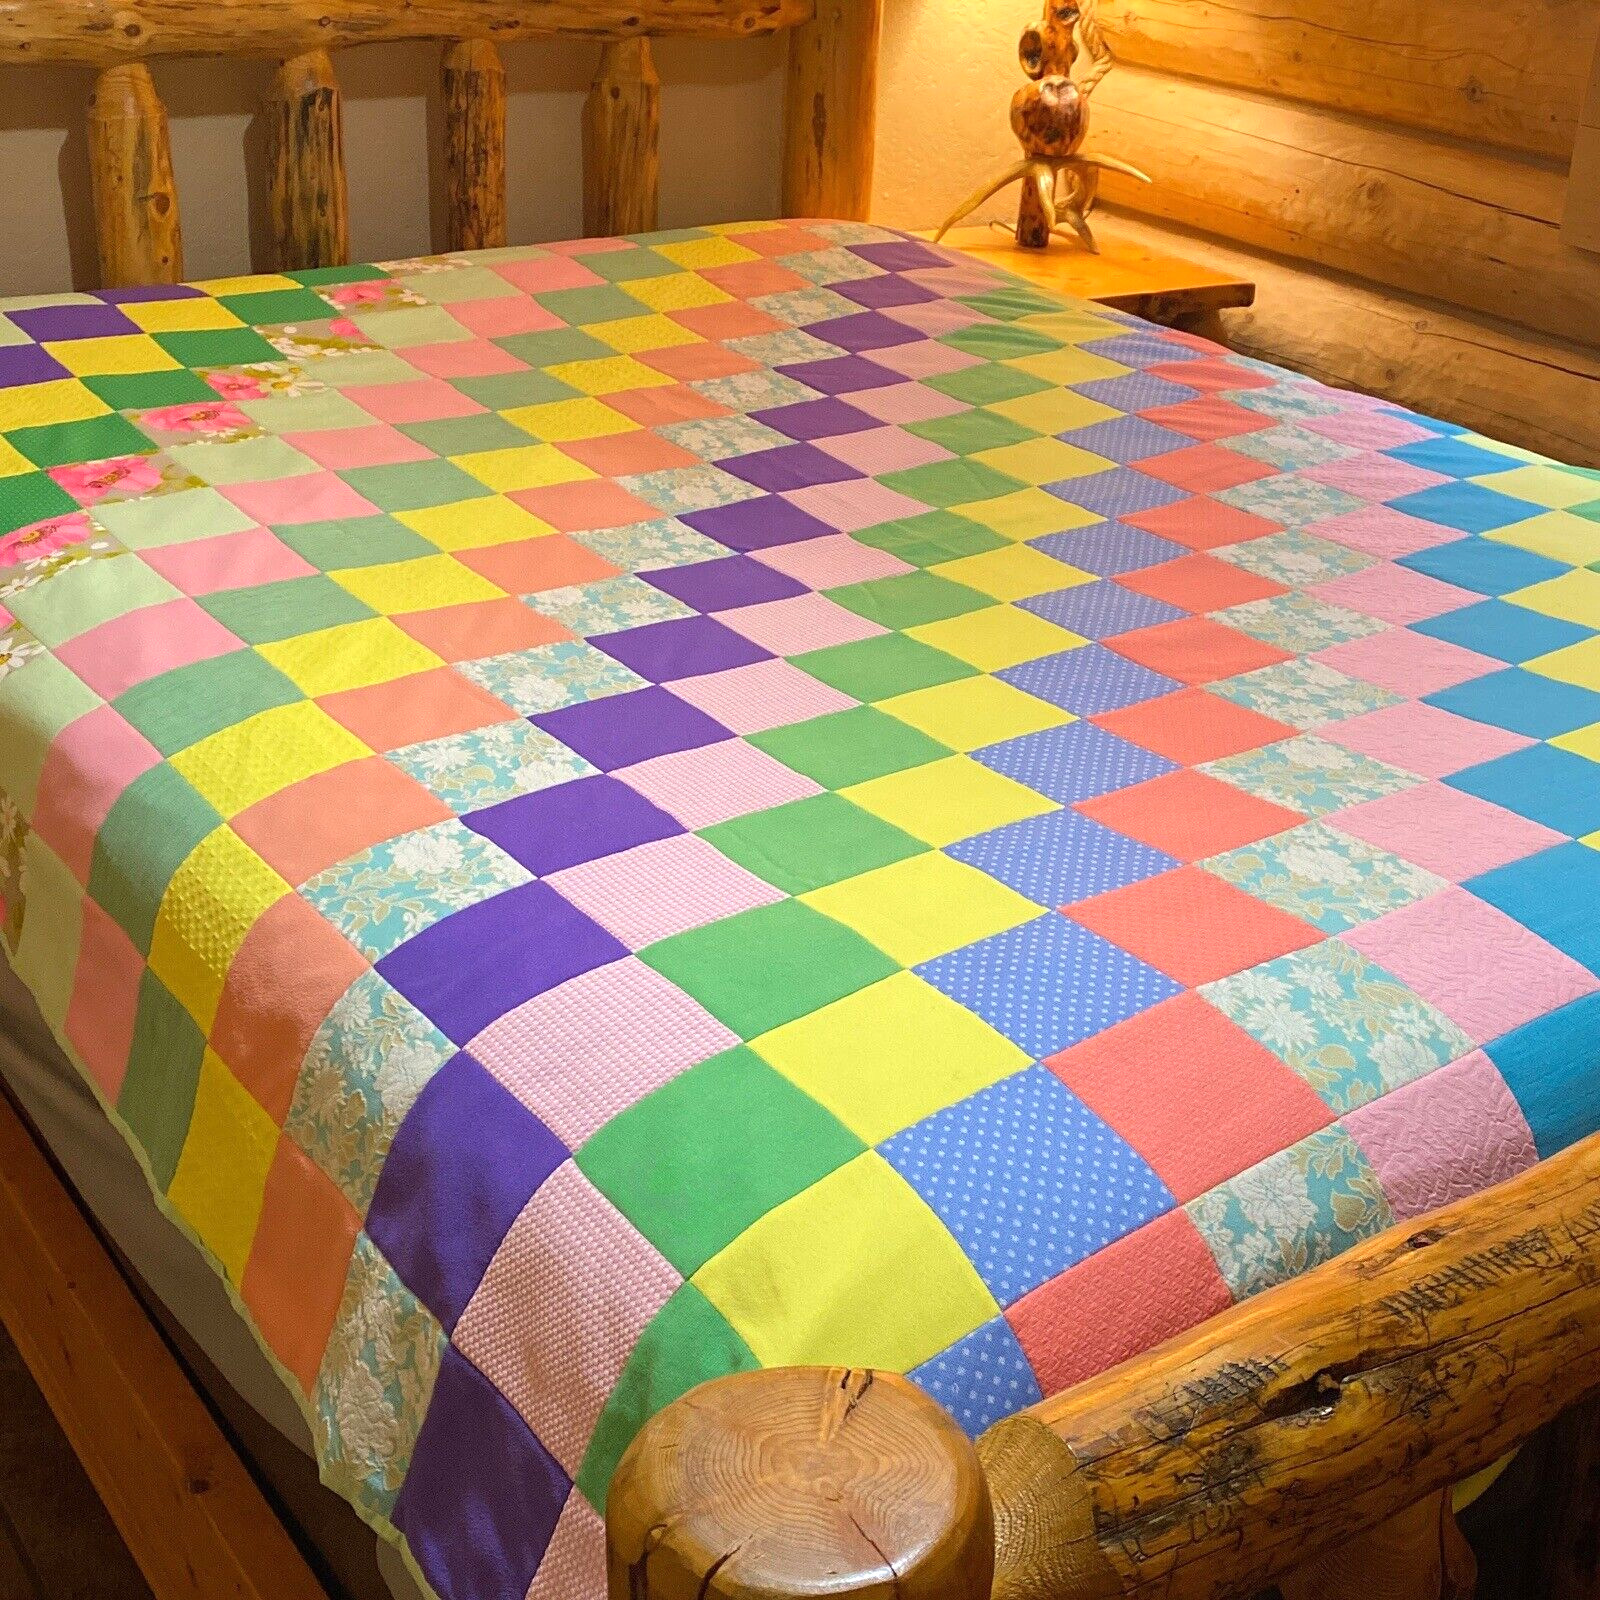 VTG Handmade Patchwork Quilt Squares Polyester Crazy Bright Grandma Boho 92 x 76